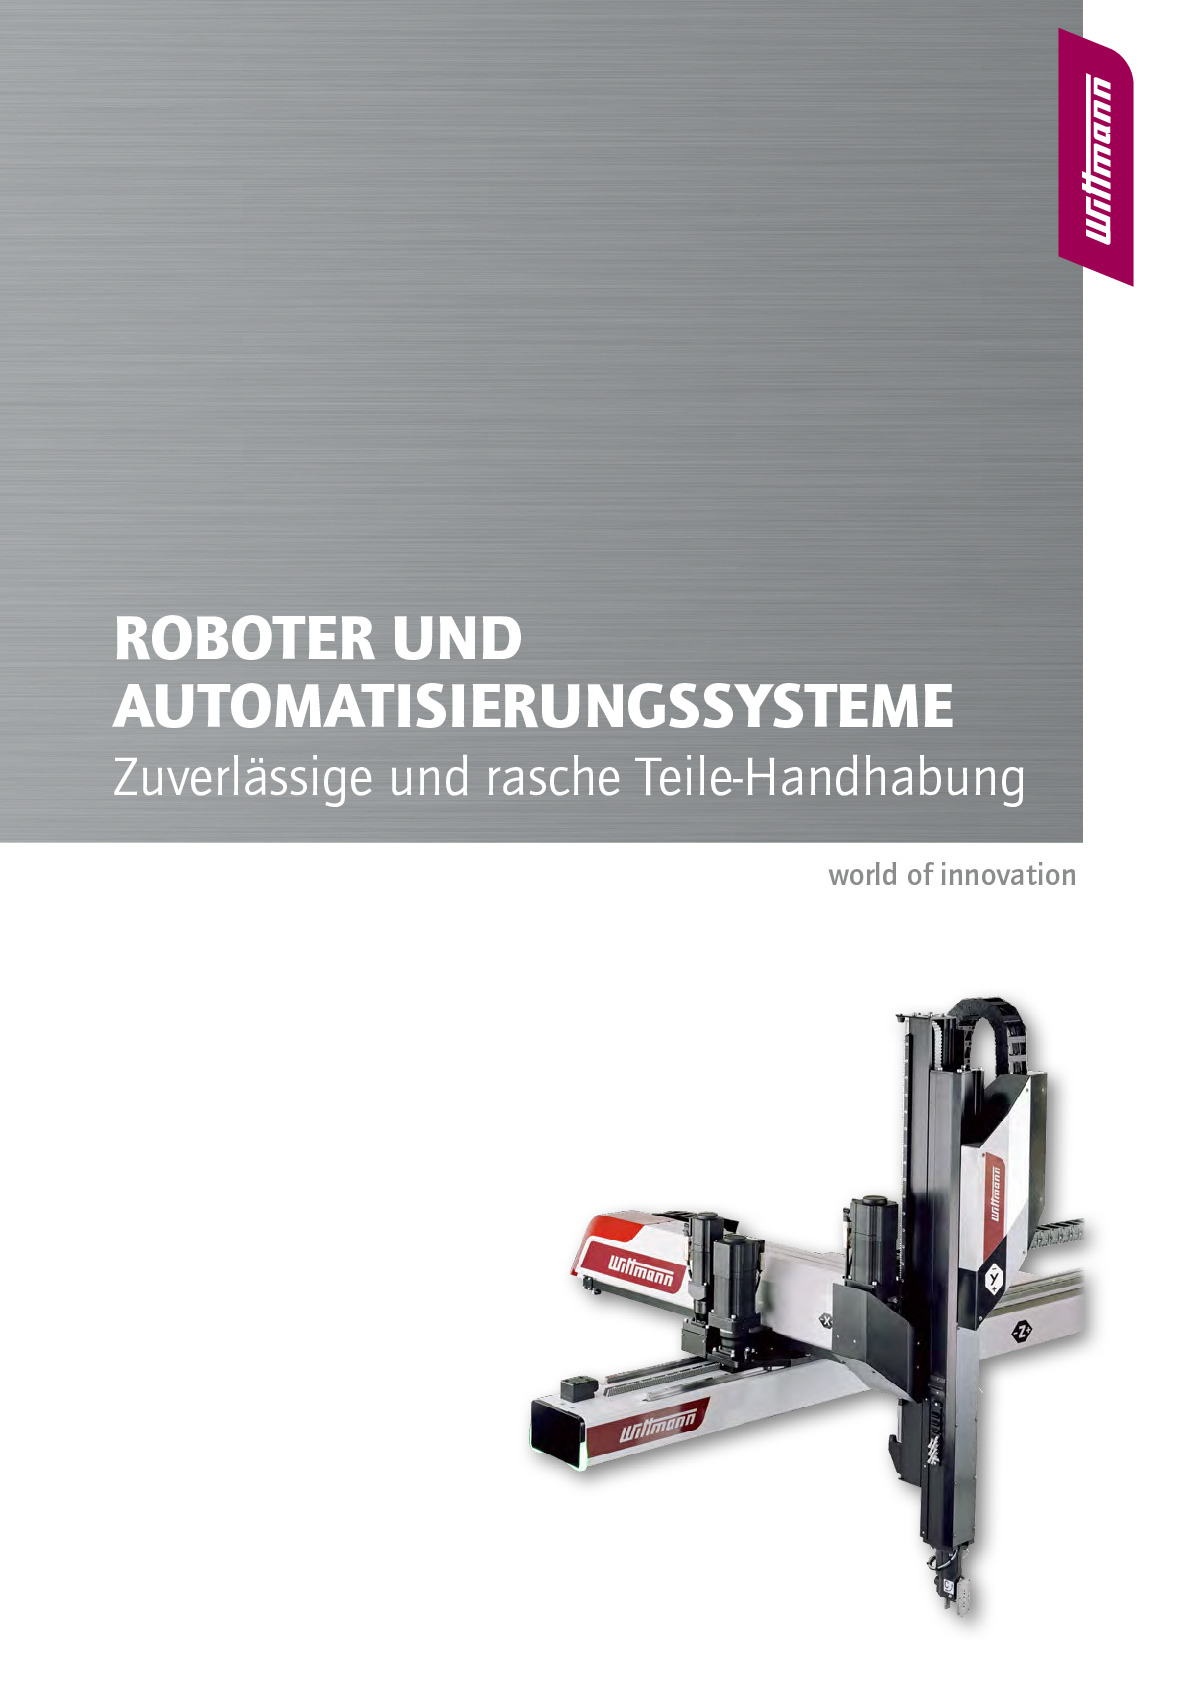 cnc-roboter_deutsch_2021-10_lowres